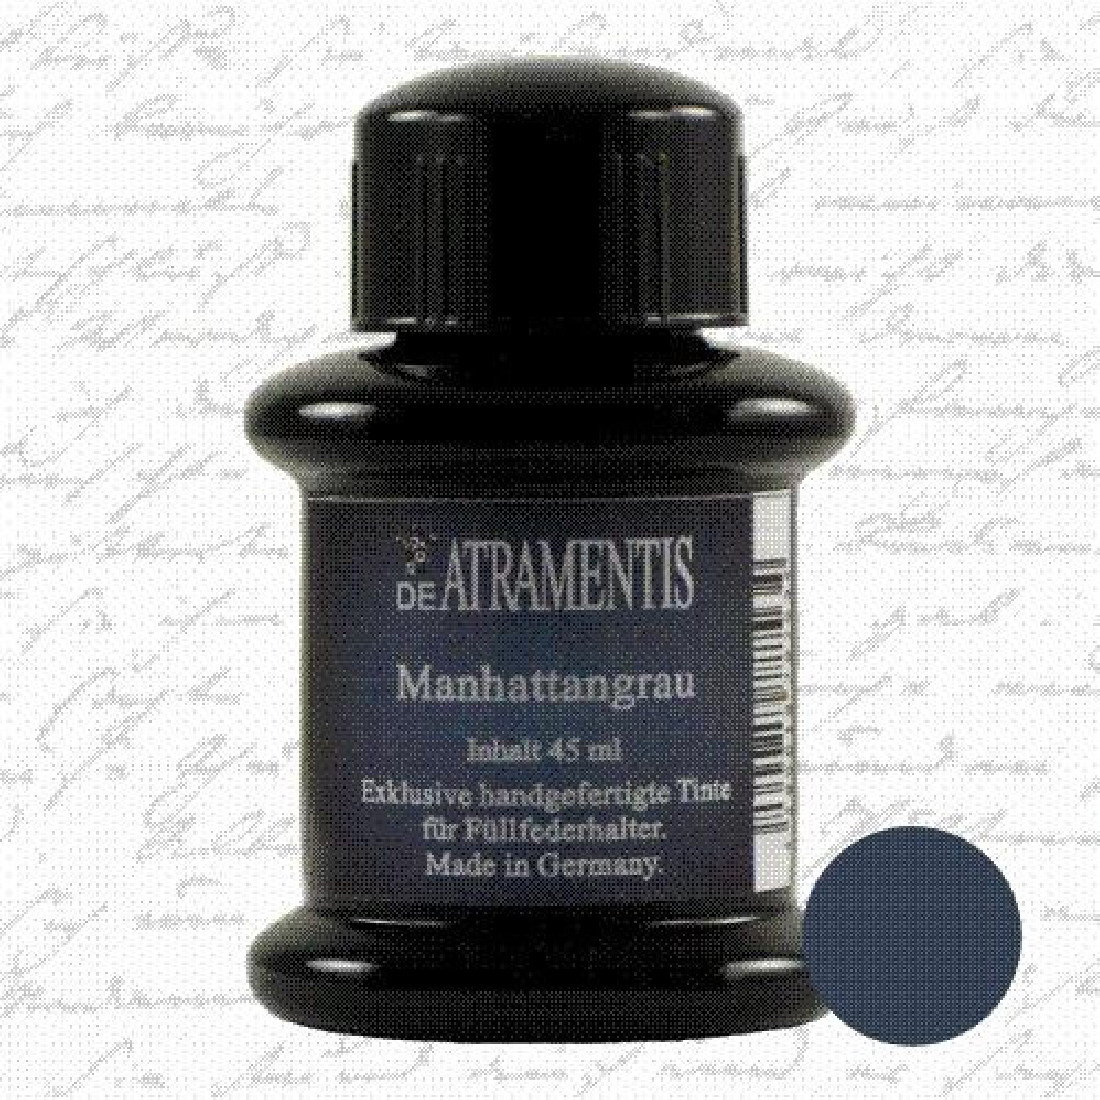 De Atramentis Manhattan Grey 45ml fountain pen standard ink